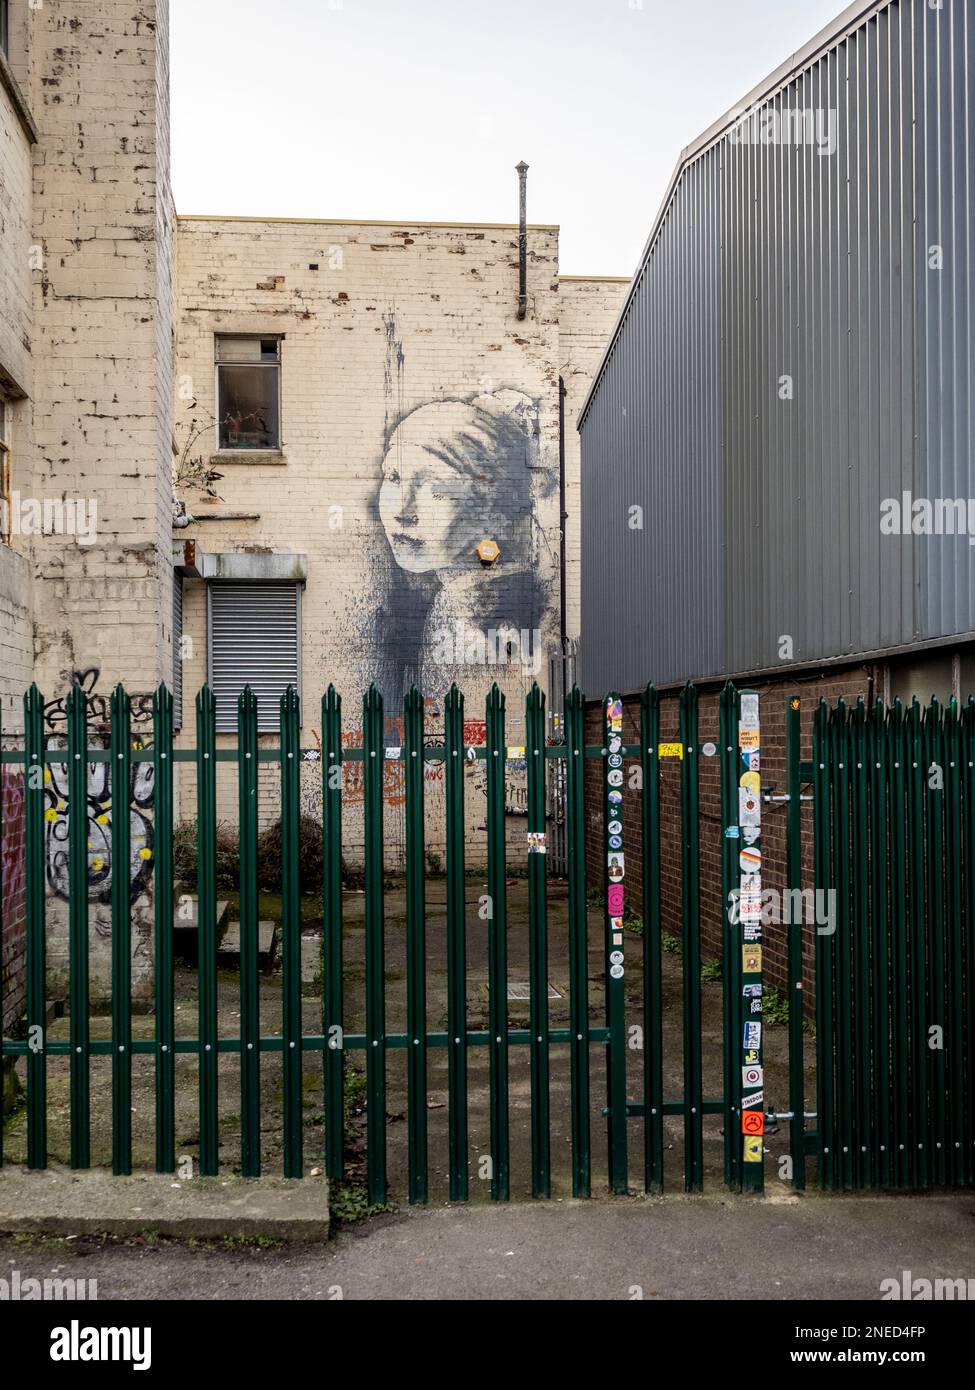 Mur de graffiti d'allée Banksy, la fille avec le tympan percé (inspiré par la peinture de Vermeer) protégé par une clôture de sécurité en métal. Bristol. ROYAUME-UNI Banque D'Images